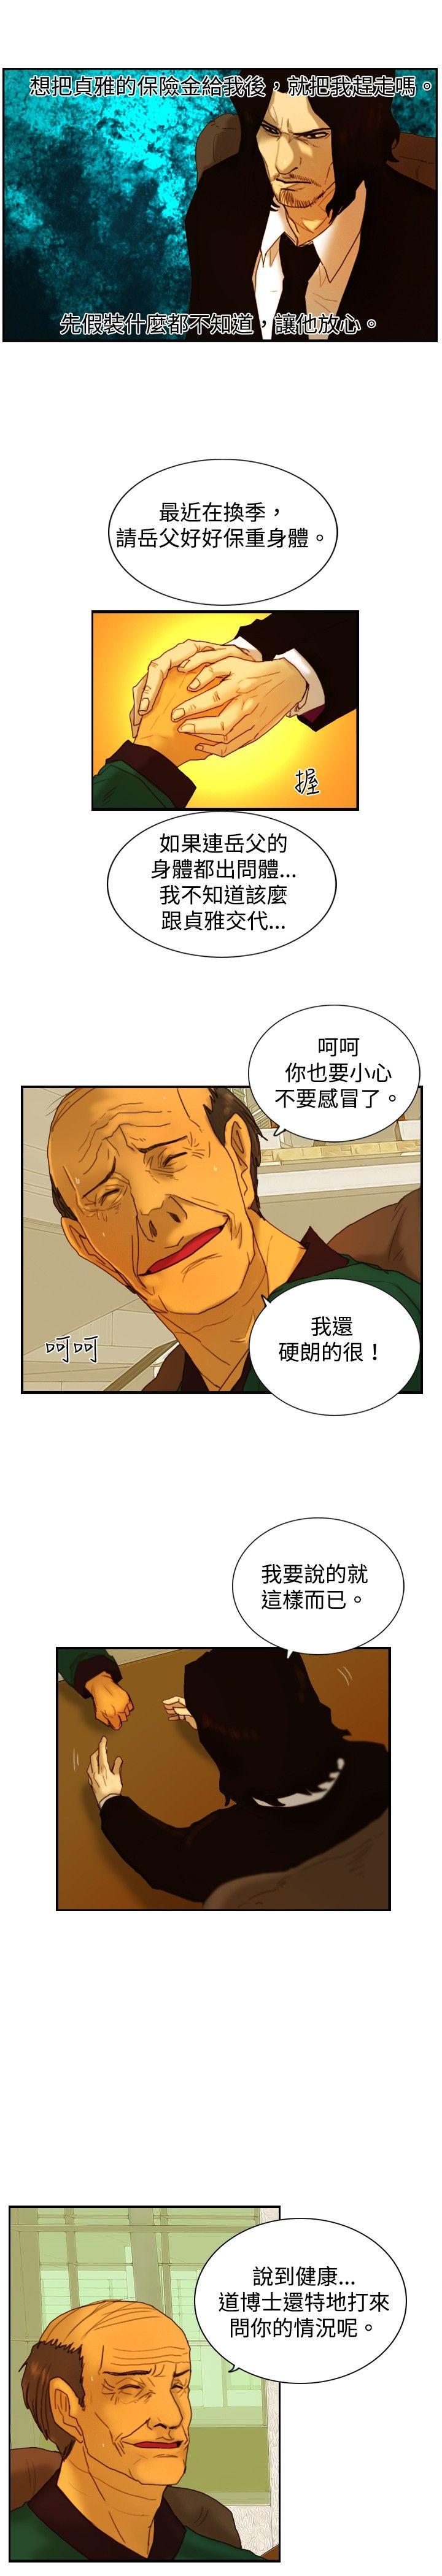 韩国污漫画 覺醒(完結) 第9话战友 18